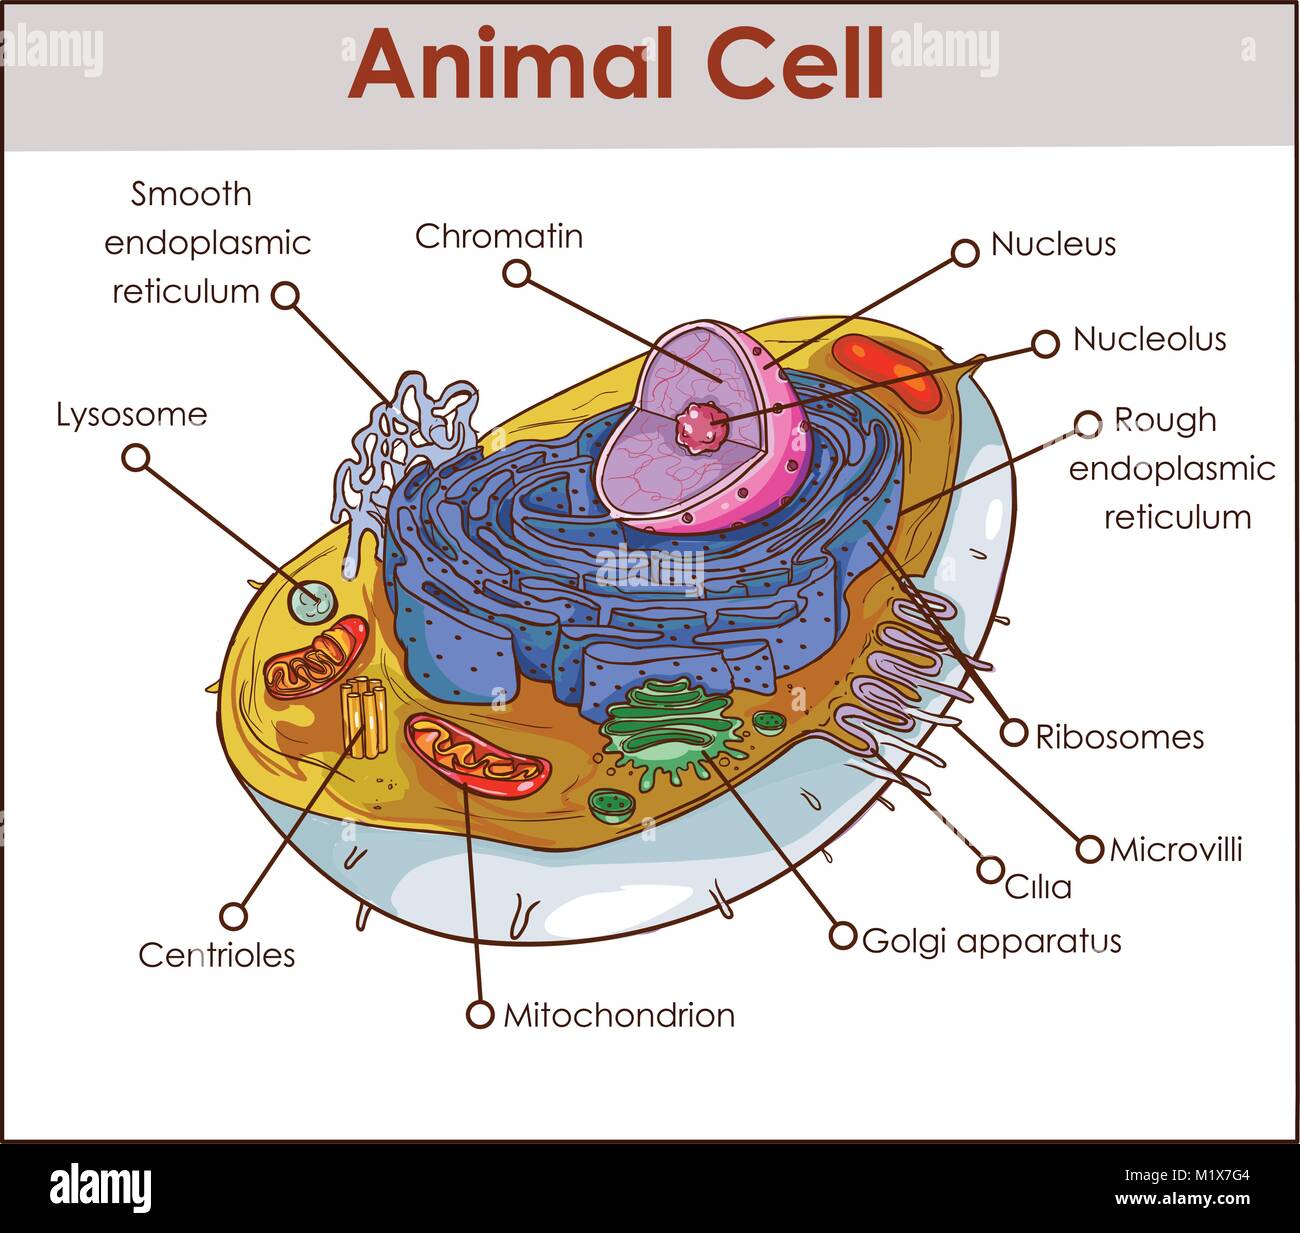 Tierischen Zelle Anatomie Diagramm Struktur mit allen Teilen Kern glatte rauhen endoplasmatischen Retikulum Zytoplasma Golgi-apparat mitochondrinmembra Centro Stock Vektor